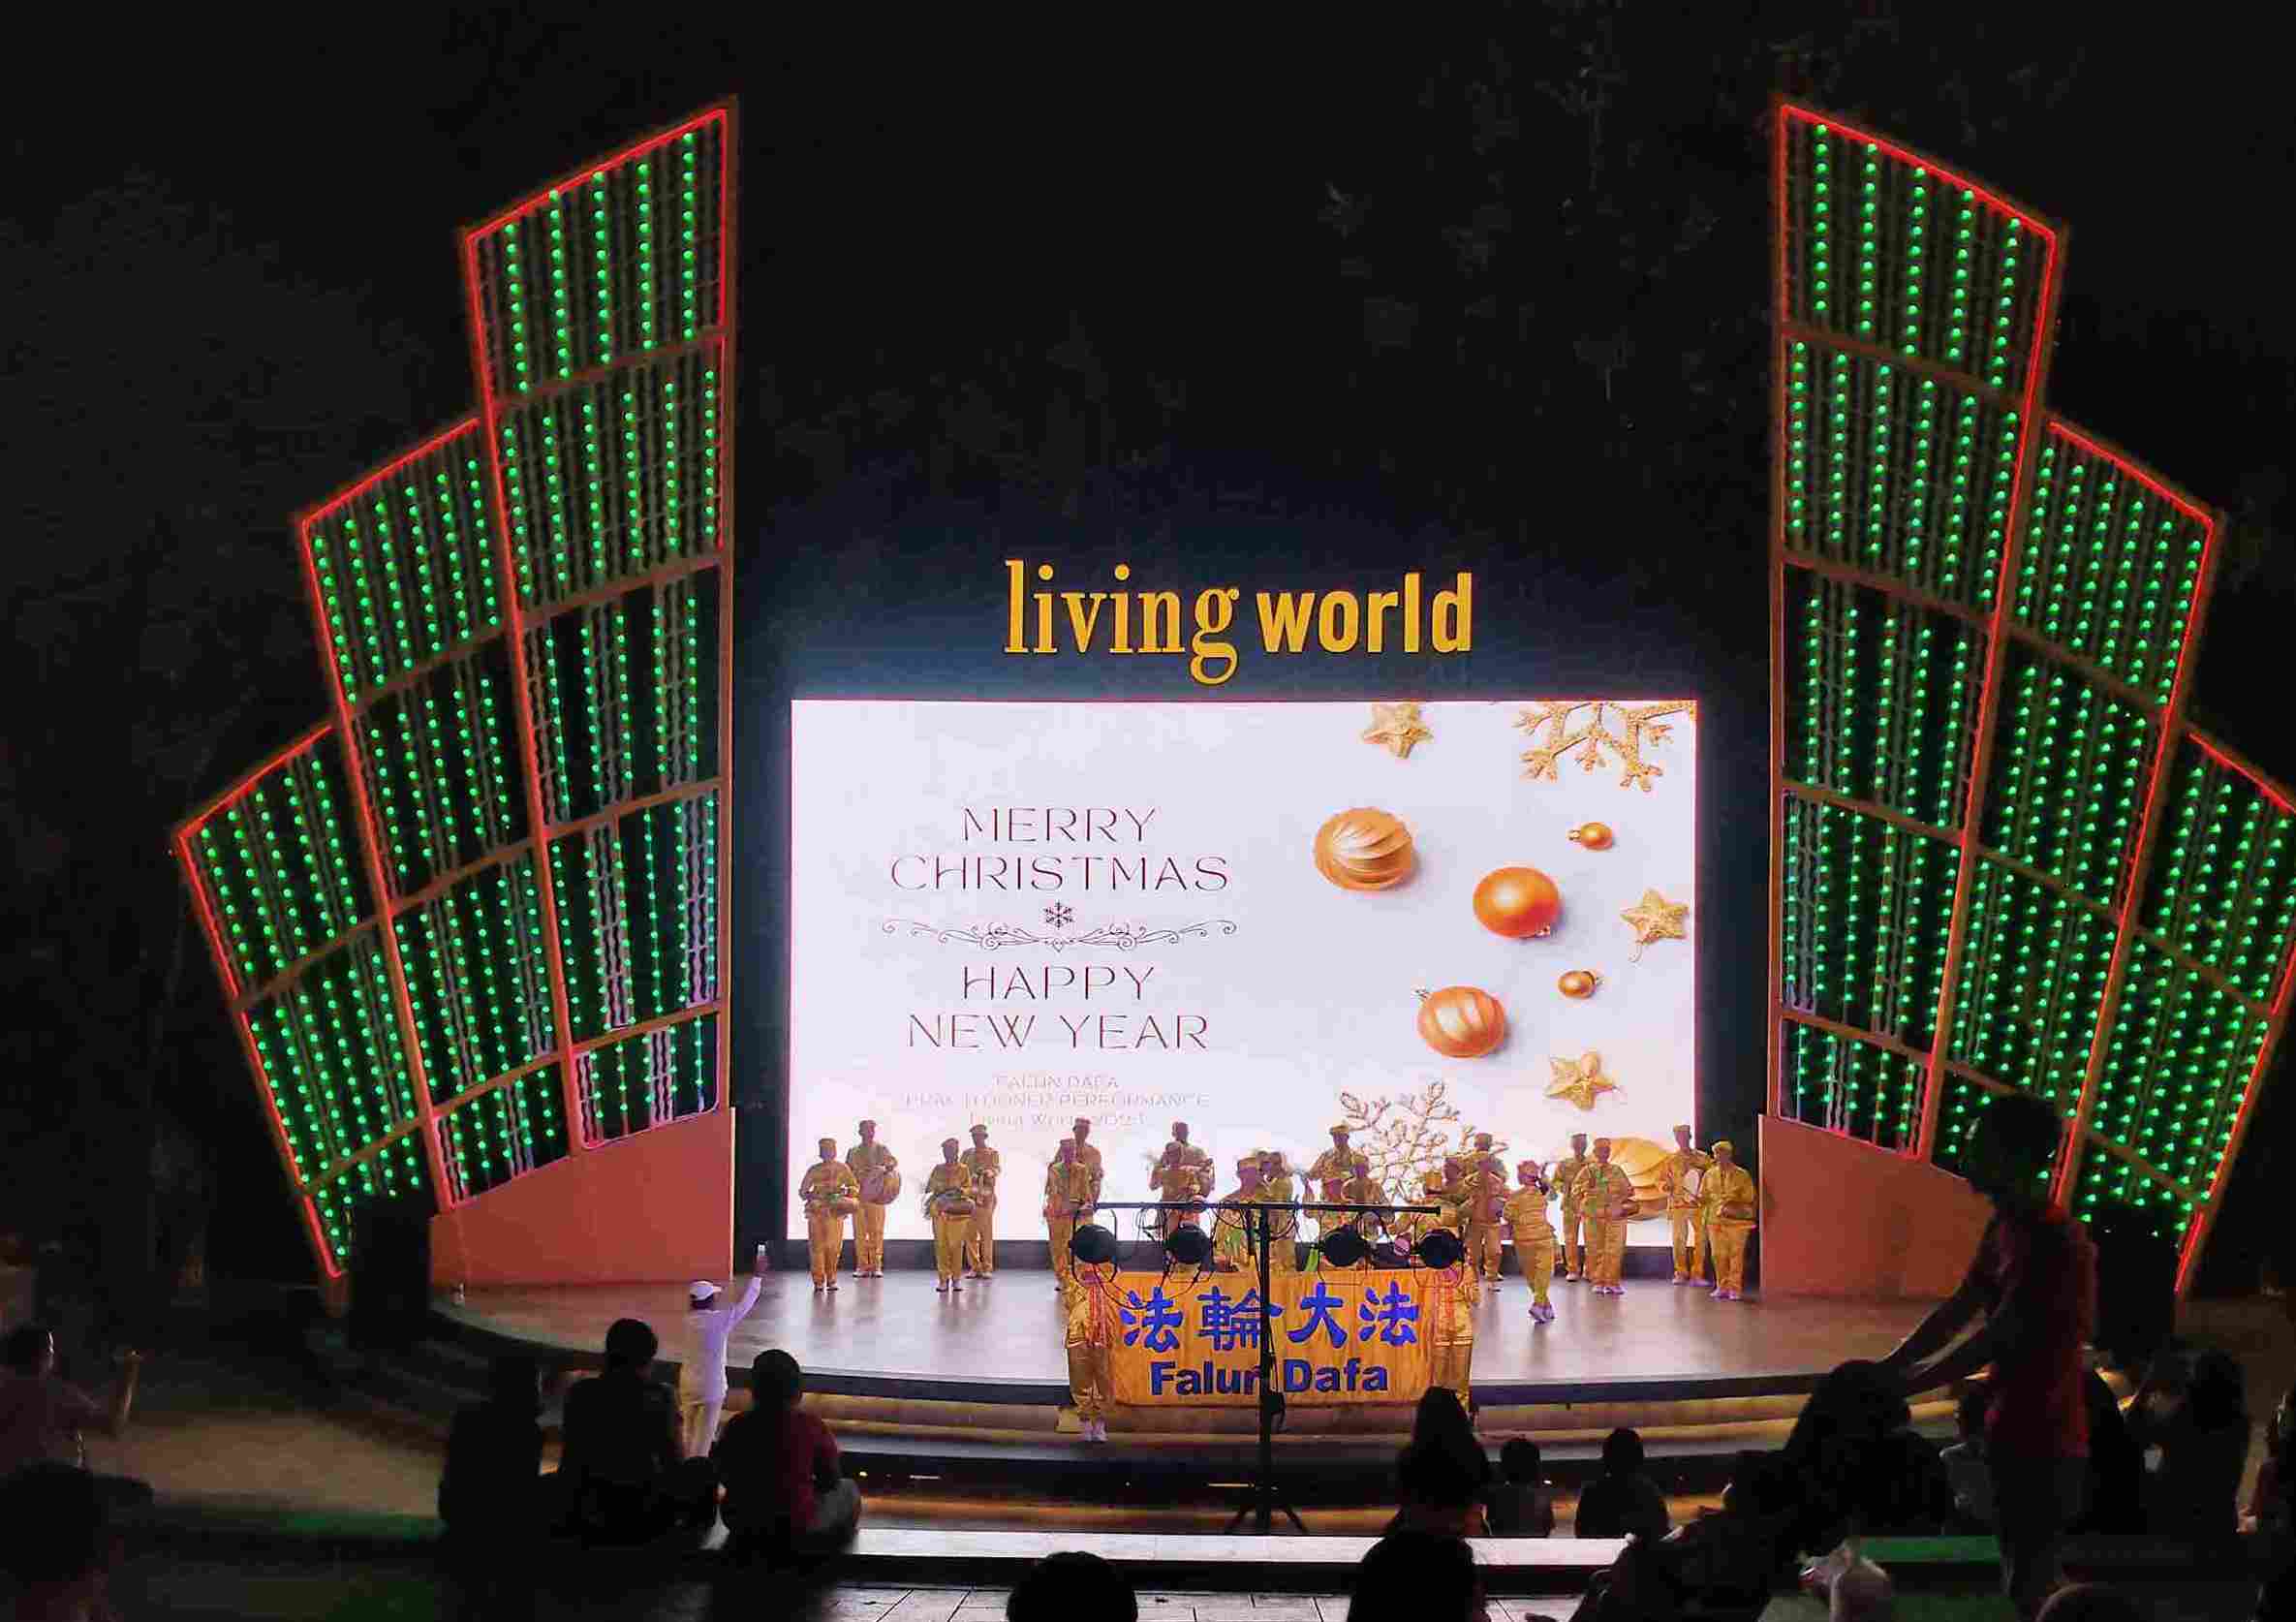 Image for article Bali, Indonesia: I praticanti introducono la Falun Dafa in un teatro all’aperto